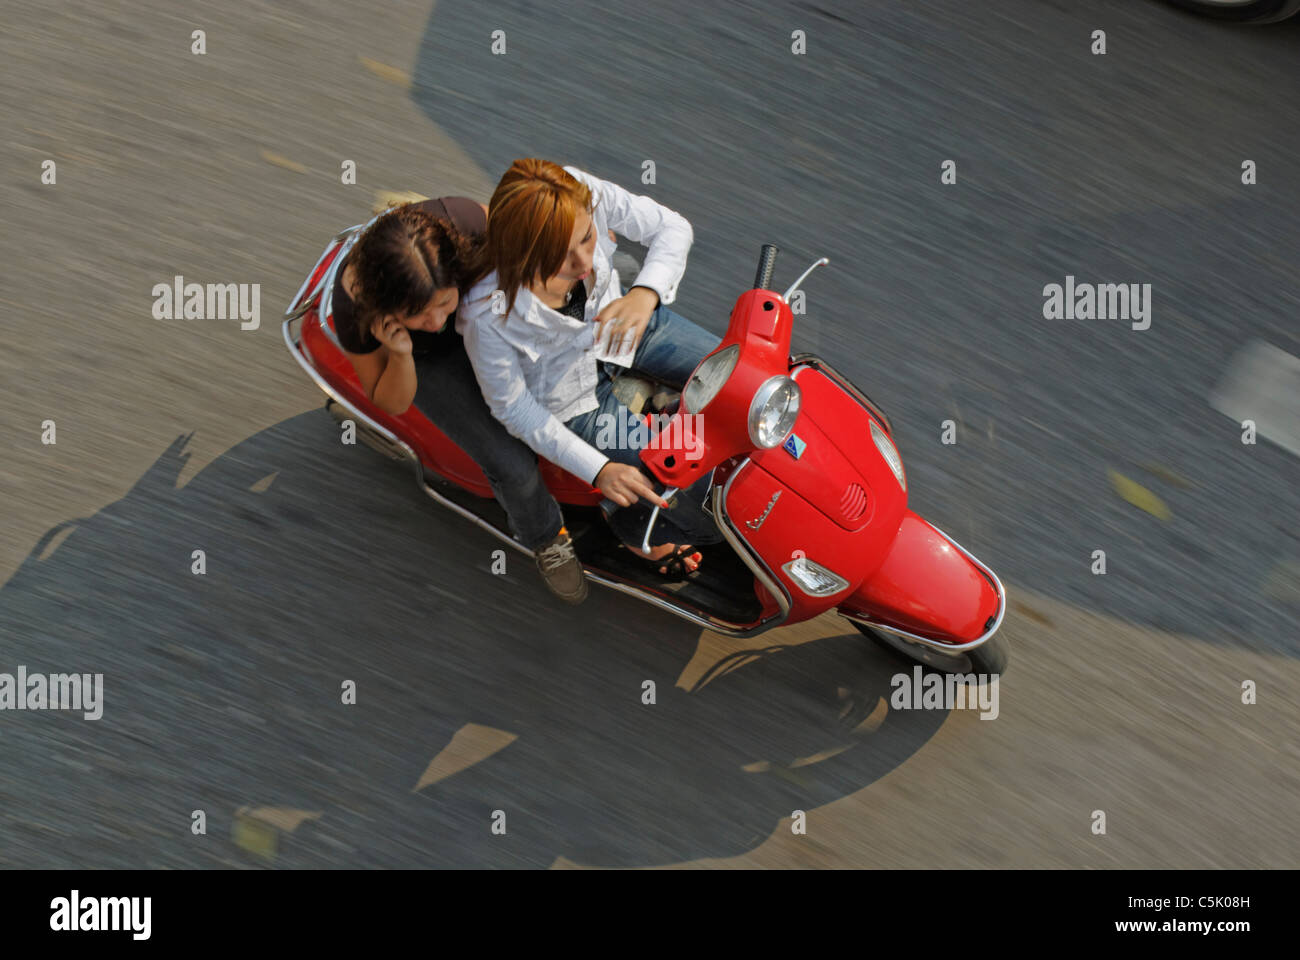 Asia, Vietnam, Hanoi. Hanoi old quarter. Young fashionable vietnamese women riding a red Vespa motorbike through Hanoi. Stock Photo